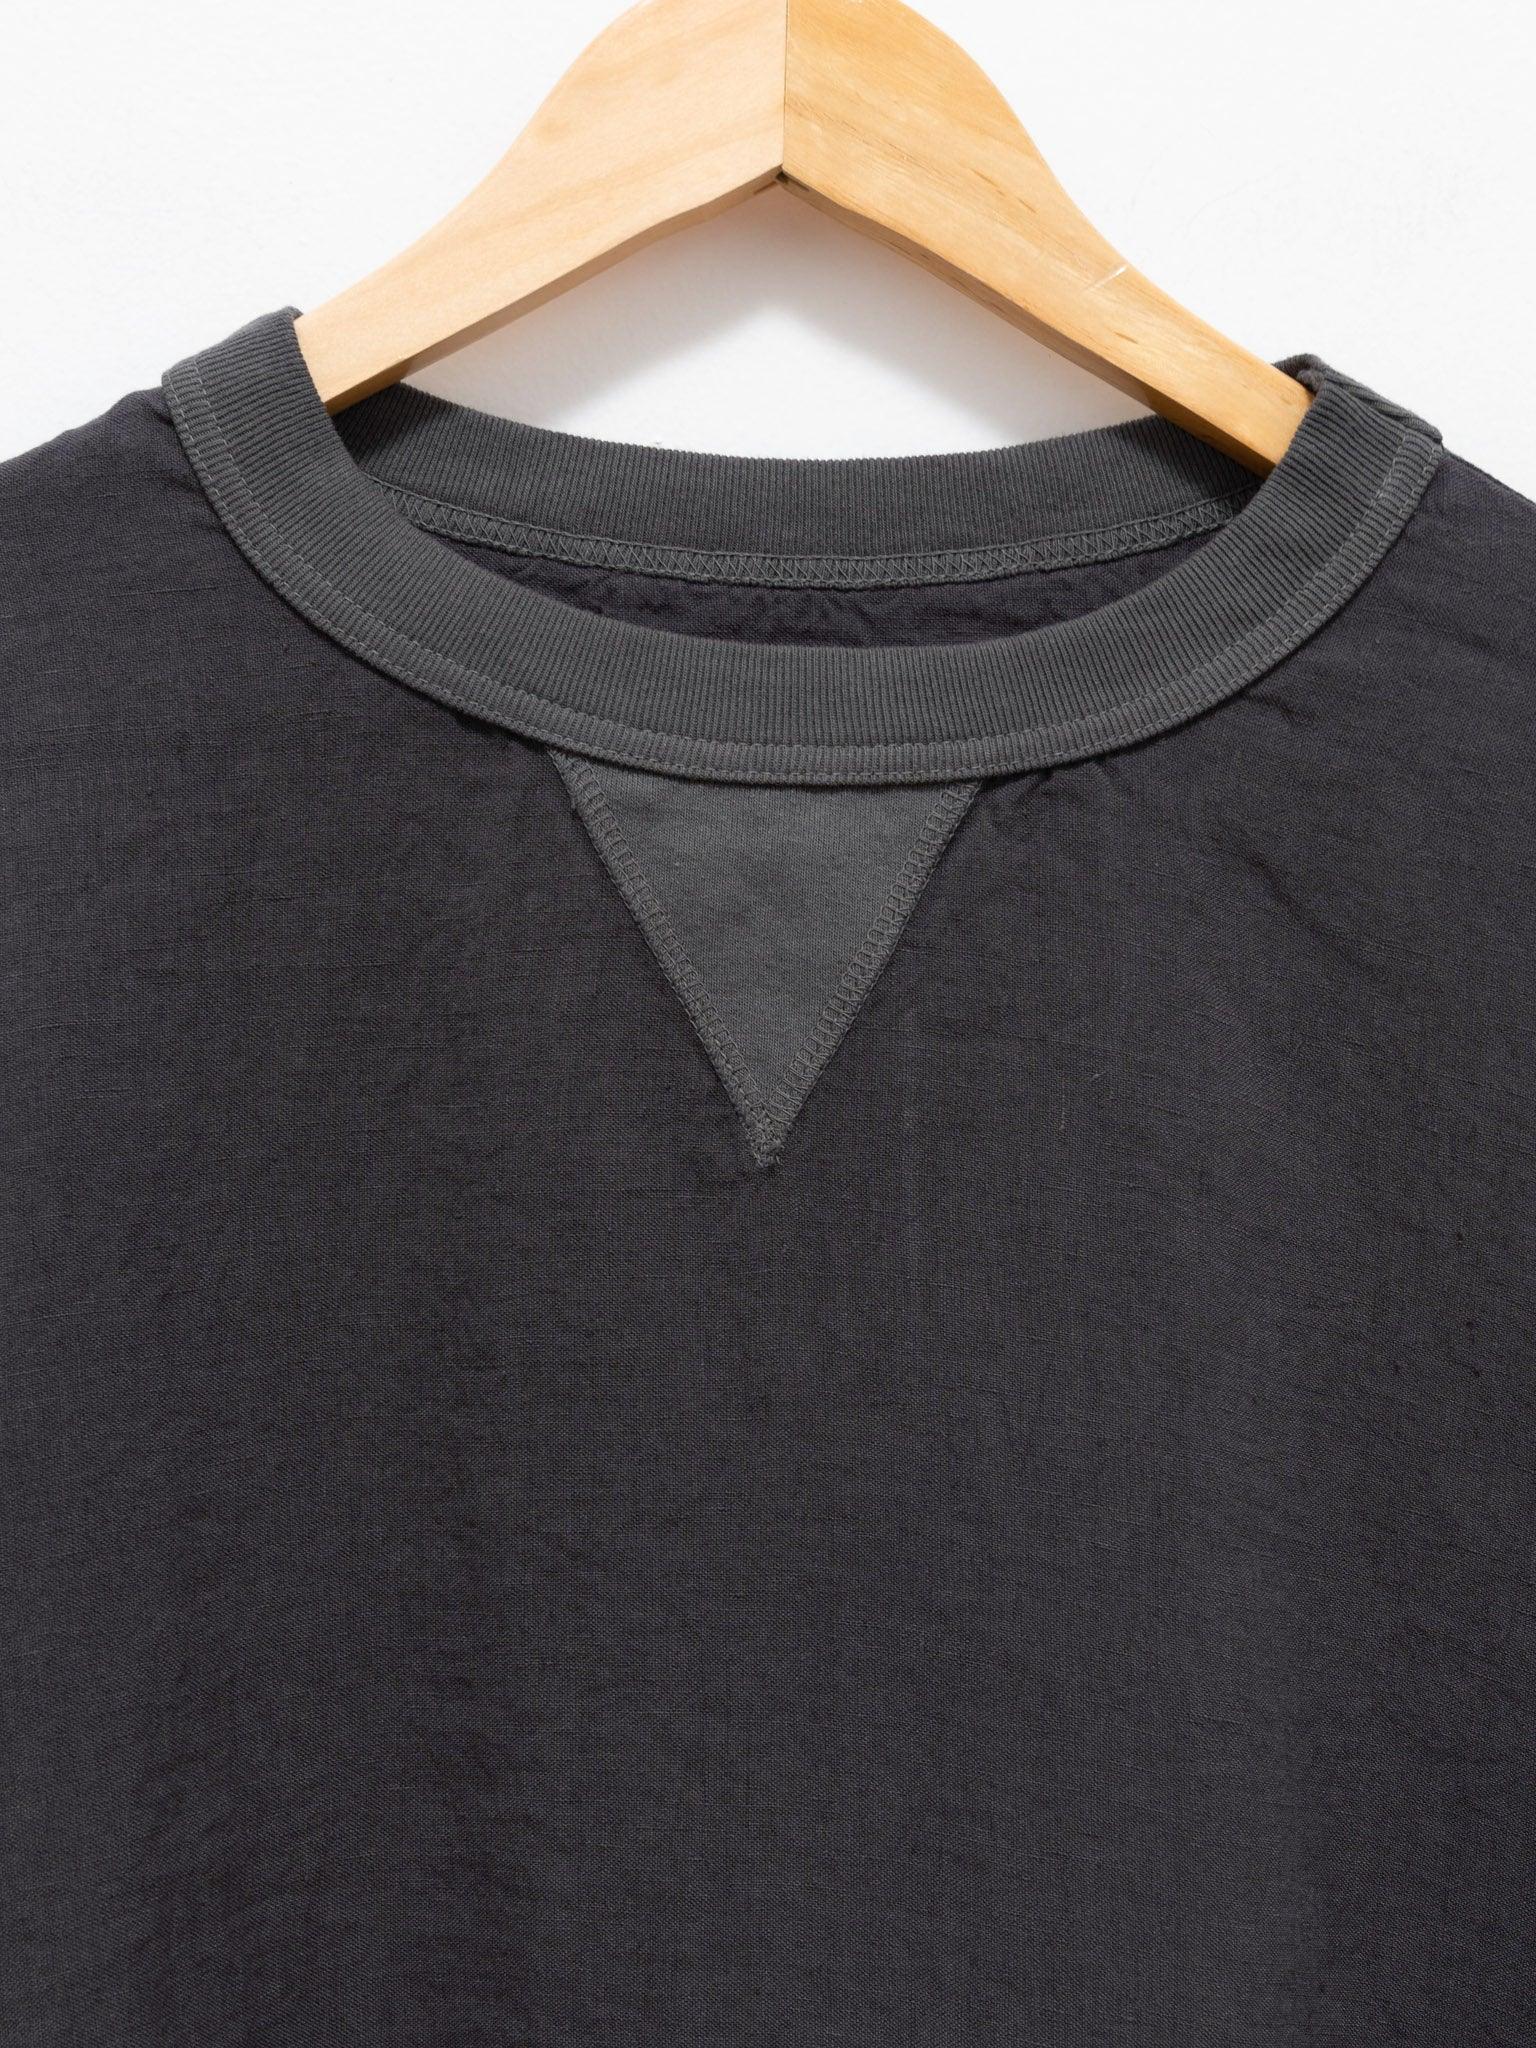 Namu Shop - Maillot Linen Big Sweatshirt Tee - Smoke Gray